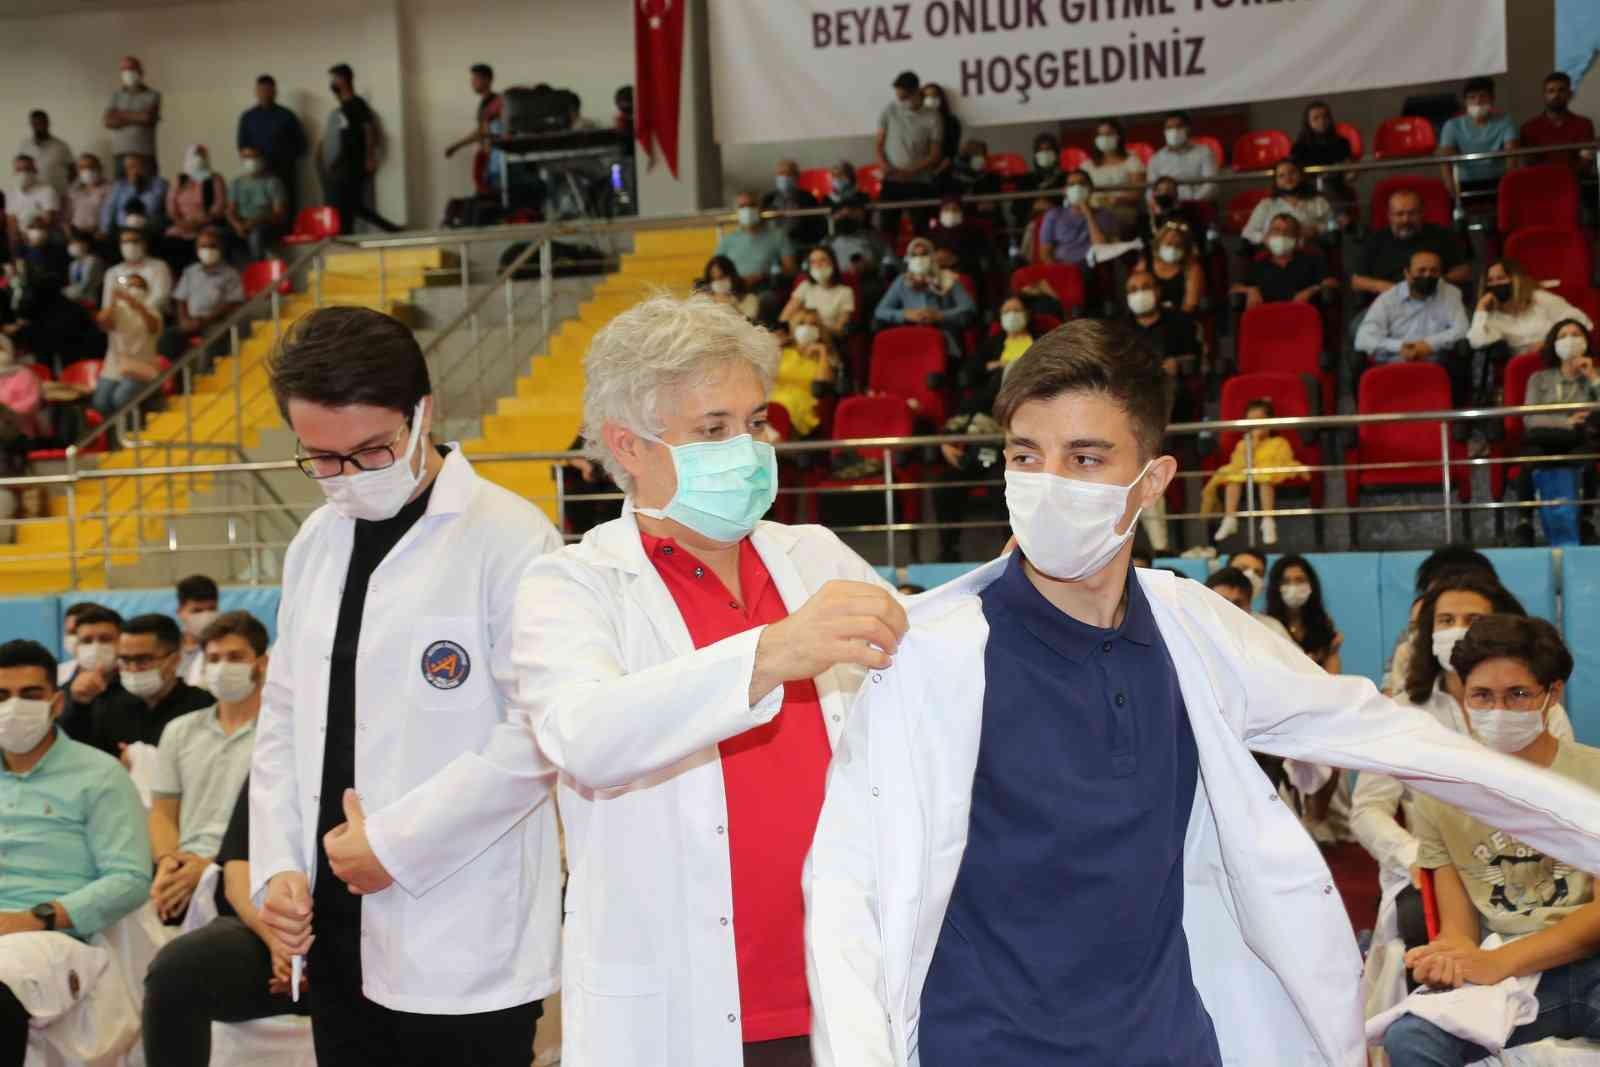 Tıp Fakültesi’nin 360  öğrencisi beyaz önlüklerini törenle giydi #antalya